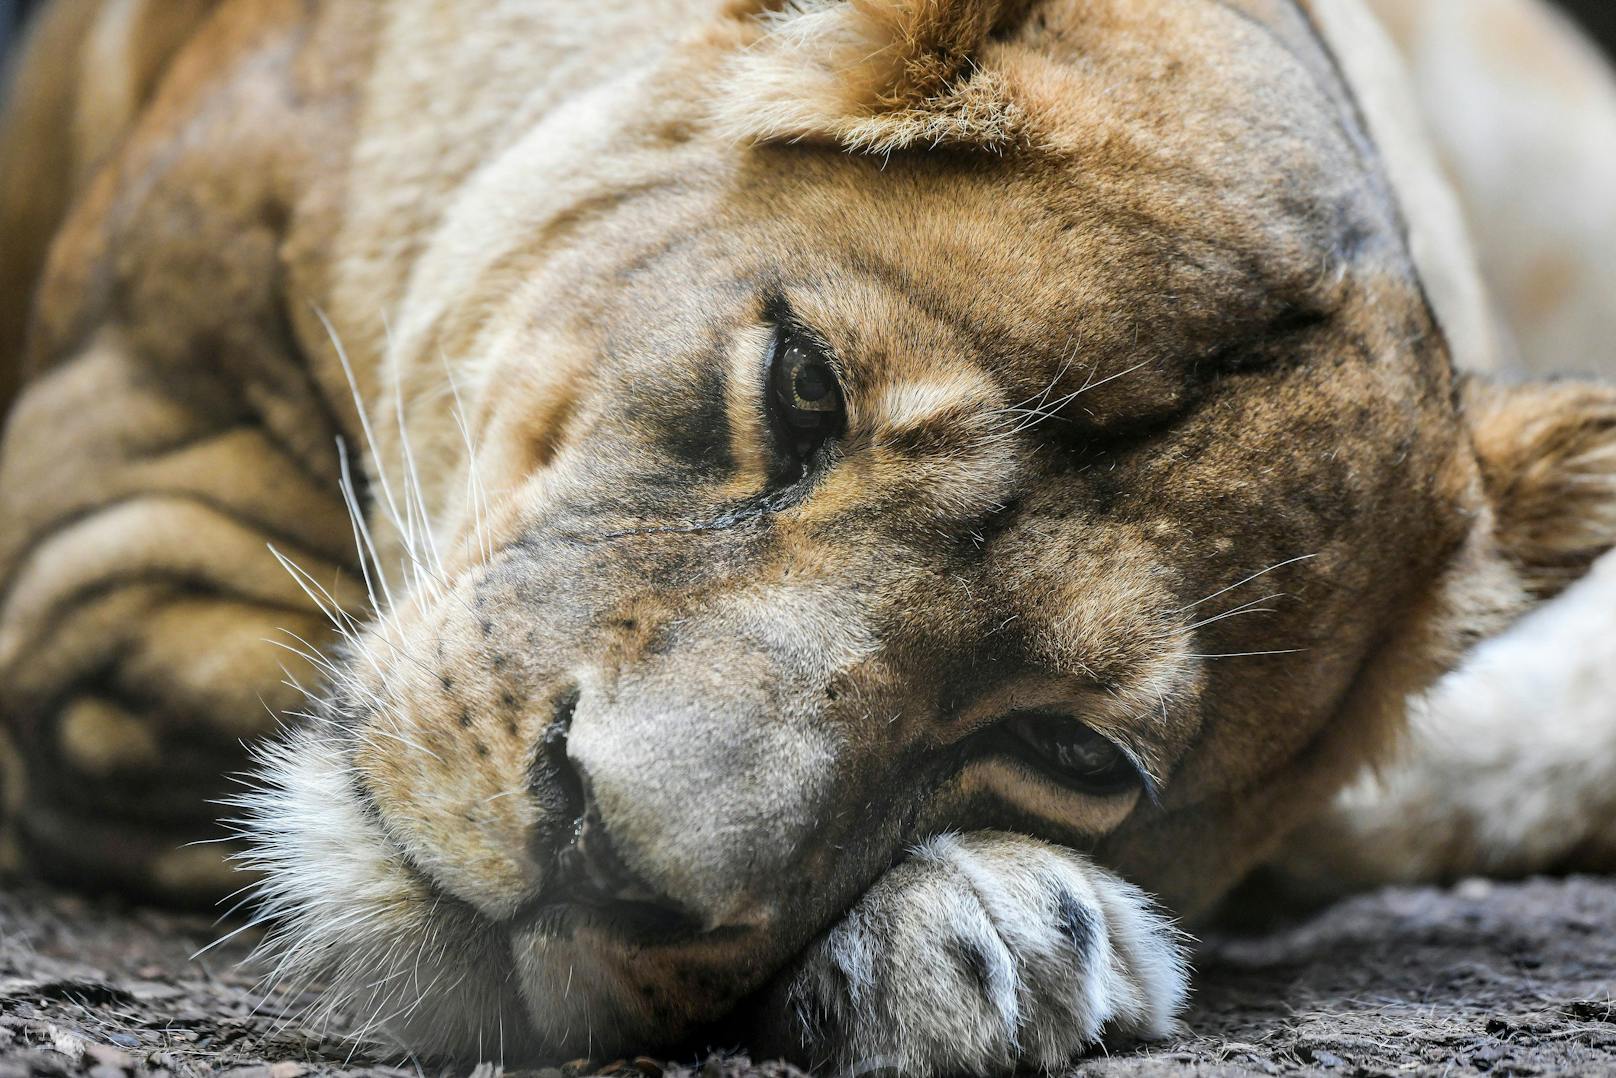 Die Löwen des Tierparks sind positiv auf das Covid-19 Virus getestet worden. 